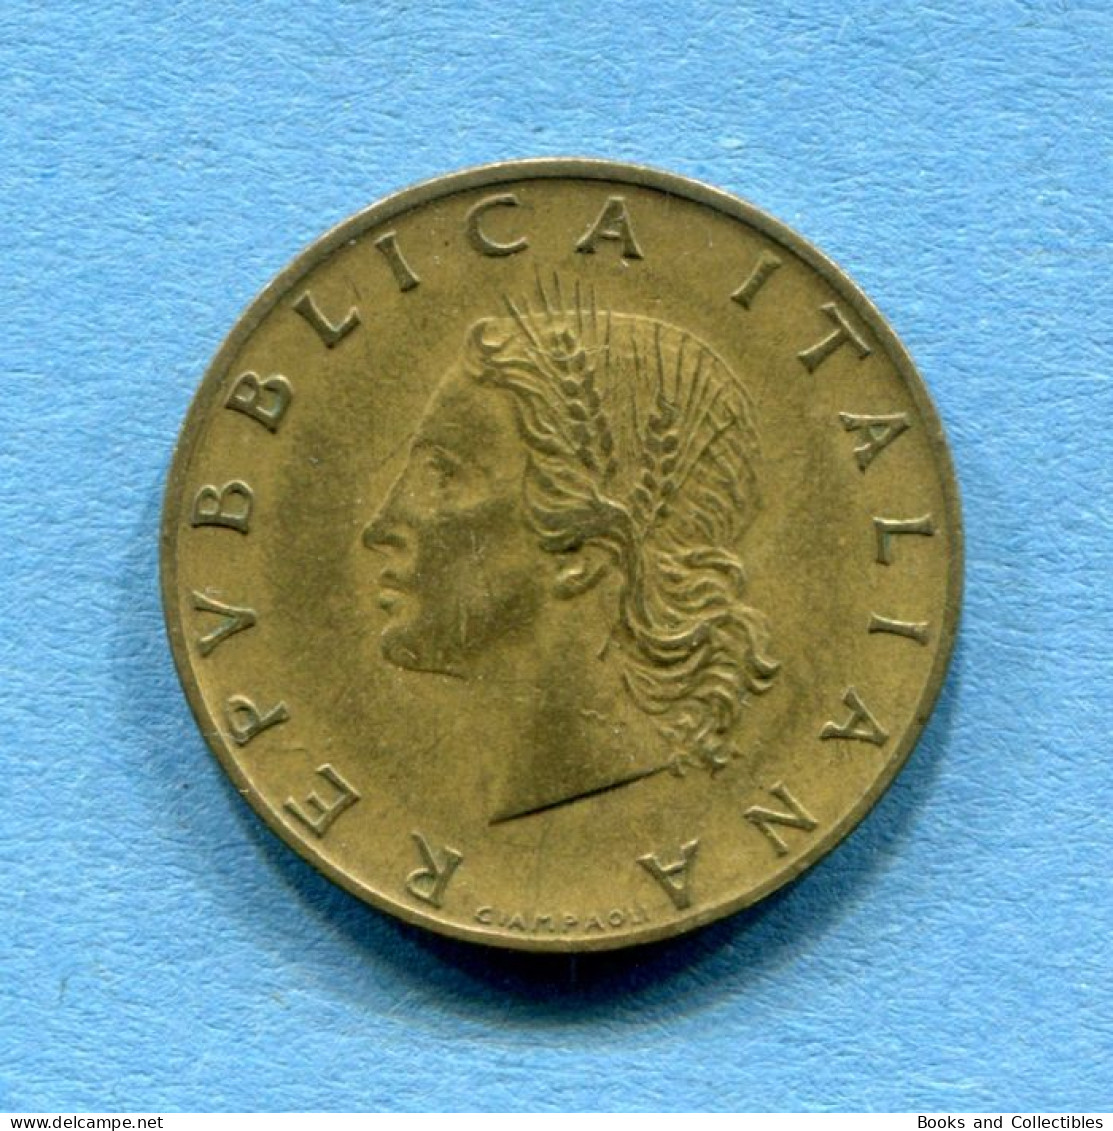 ITALIA - 20 Lire 1957 - VARIANTE ('7' Con Grazie) - Diam: 21,25 Mm, KM# 97.1 * Rif. 0049 - 20 Lire